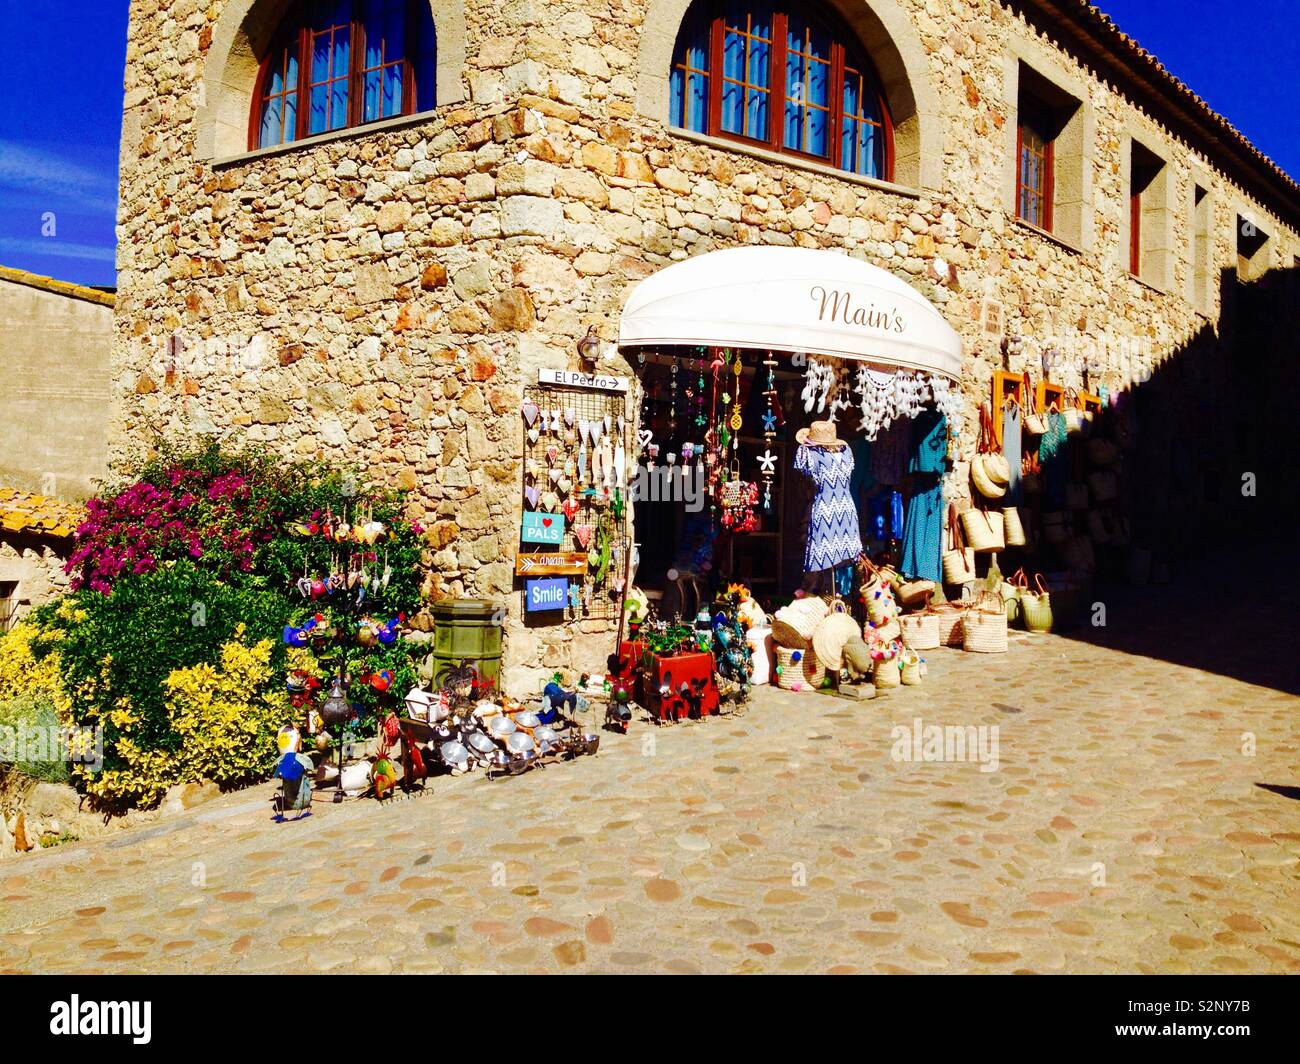 Negozio di souvenir shop in Pals città medievale. La Catalogna. Spagna Foto Stock